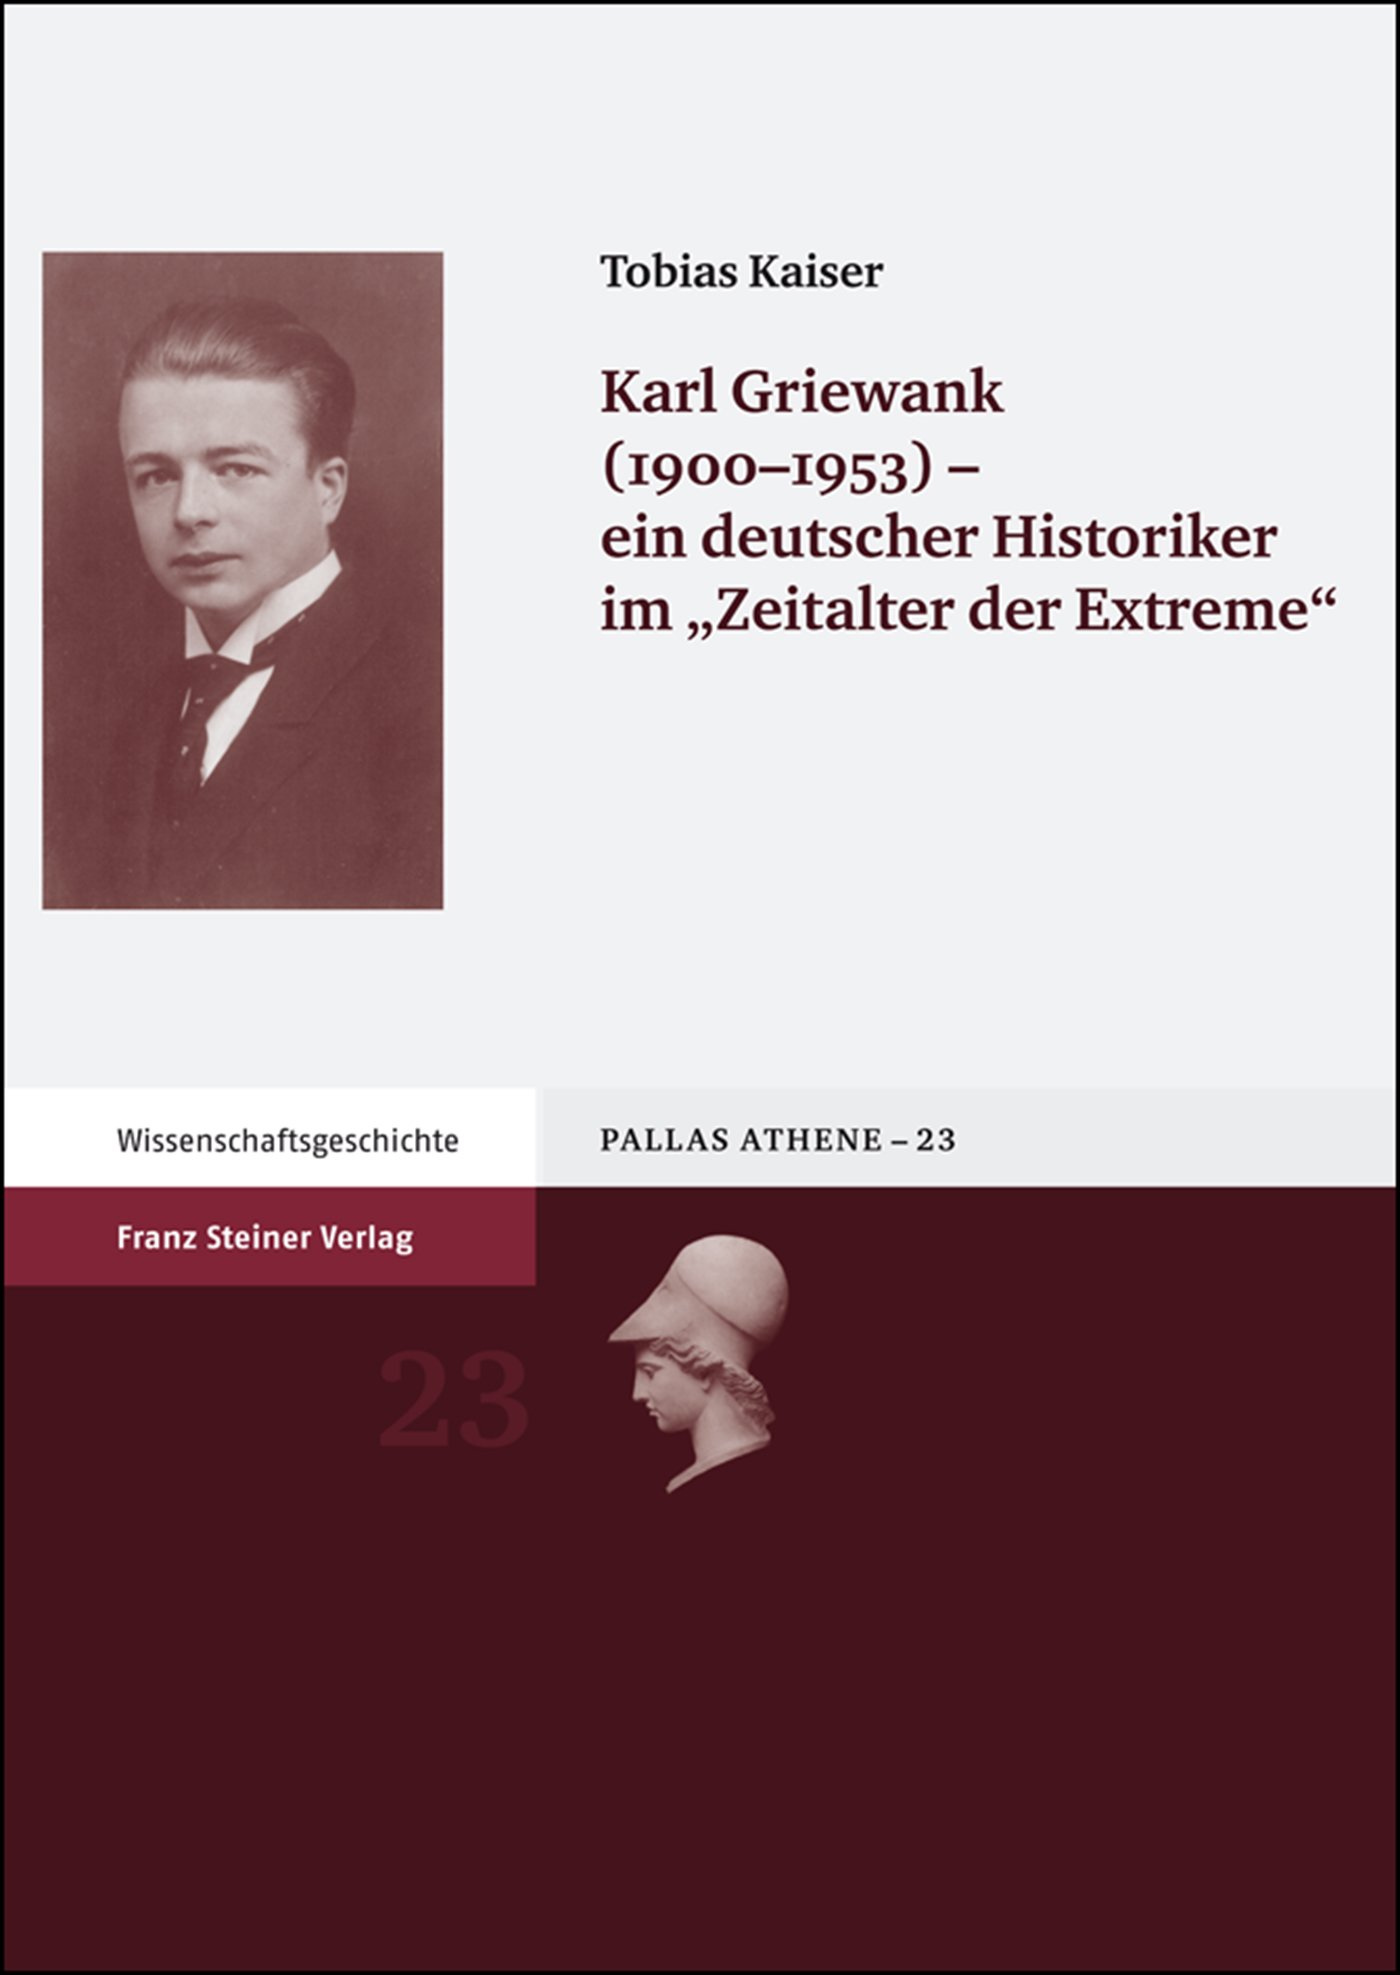 Karl Griewank (1900-1953) – ein deutscher Historiker im "Zeitalter der Extreme"